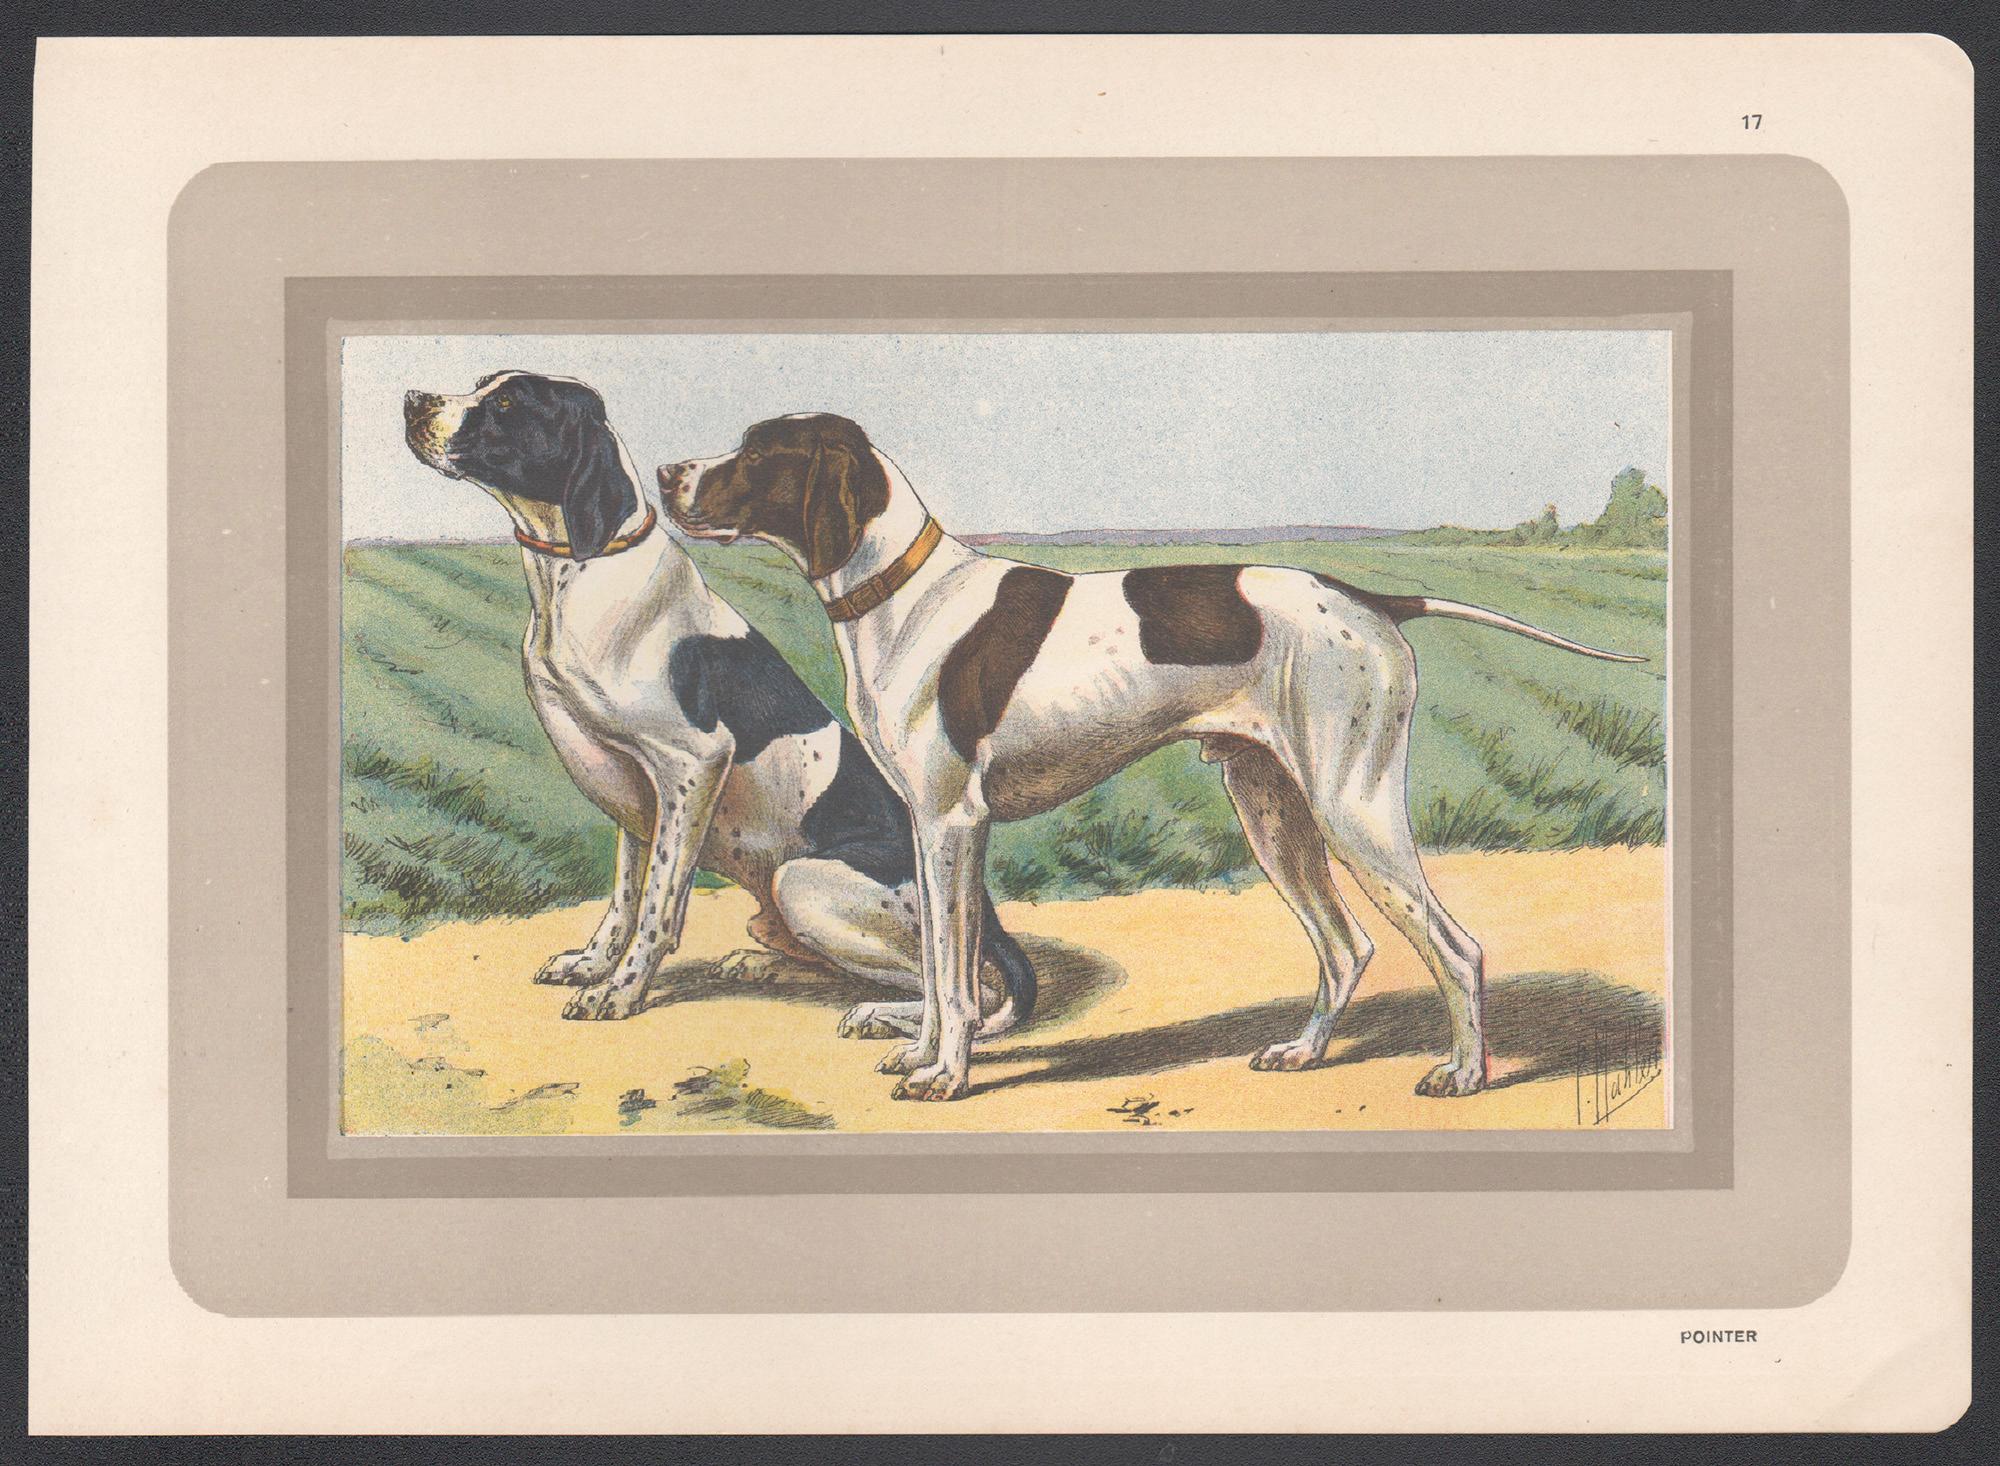 Pointer, Französischer Chromolithographiedruck mit Hund, 1930er-Jahre – Print von P. Mahler